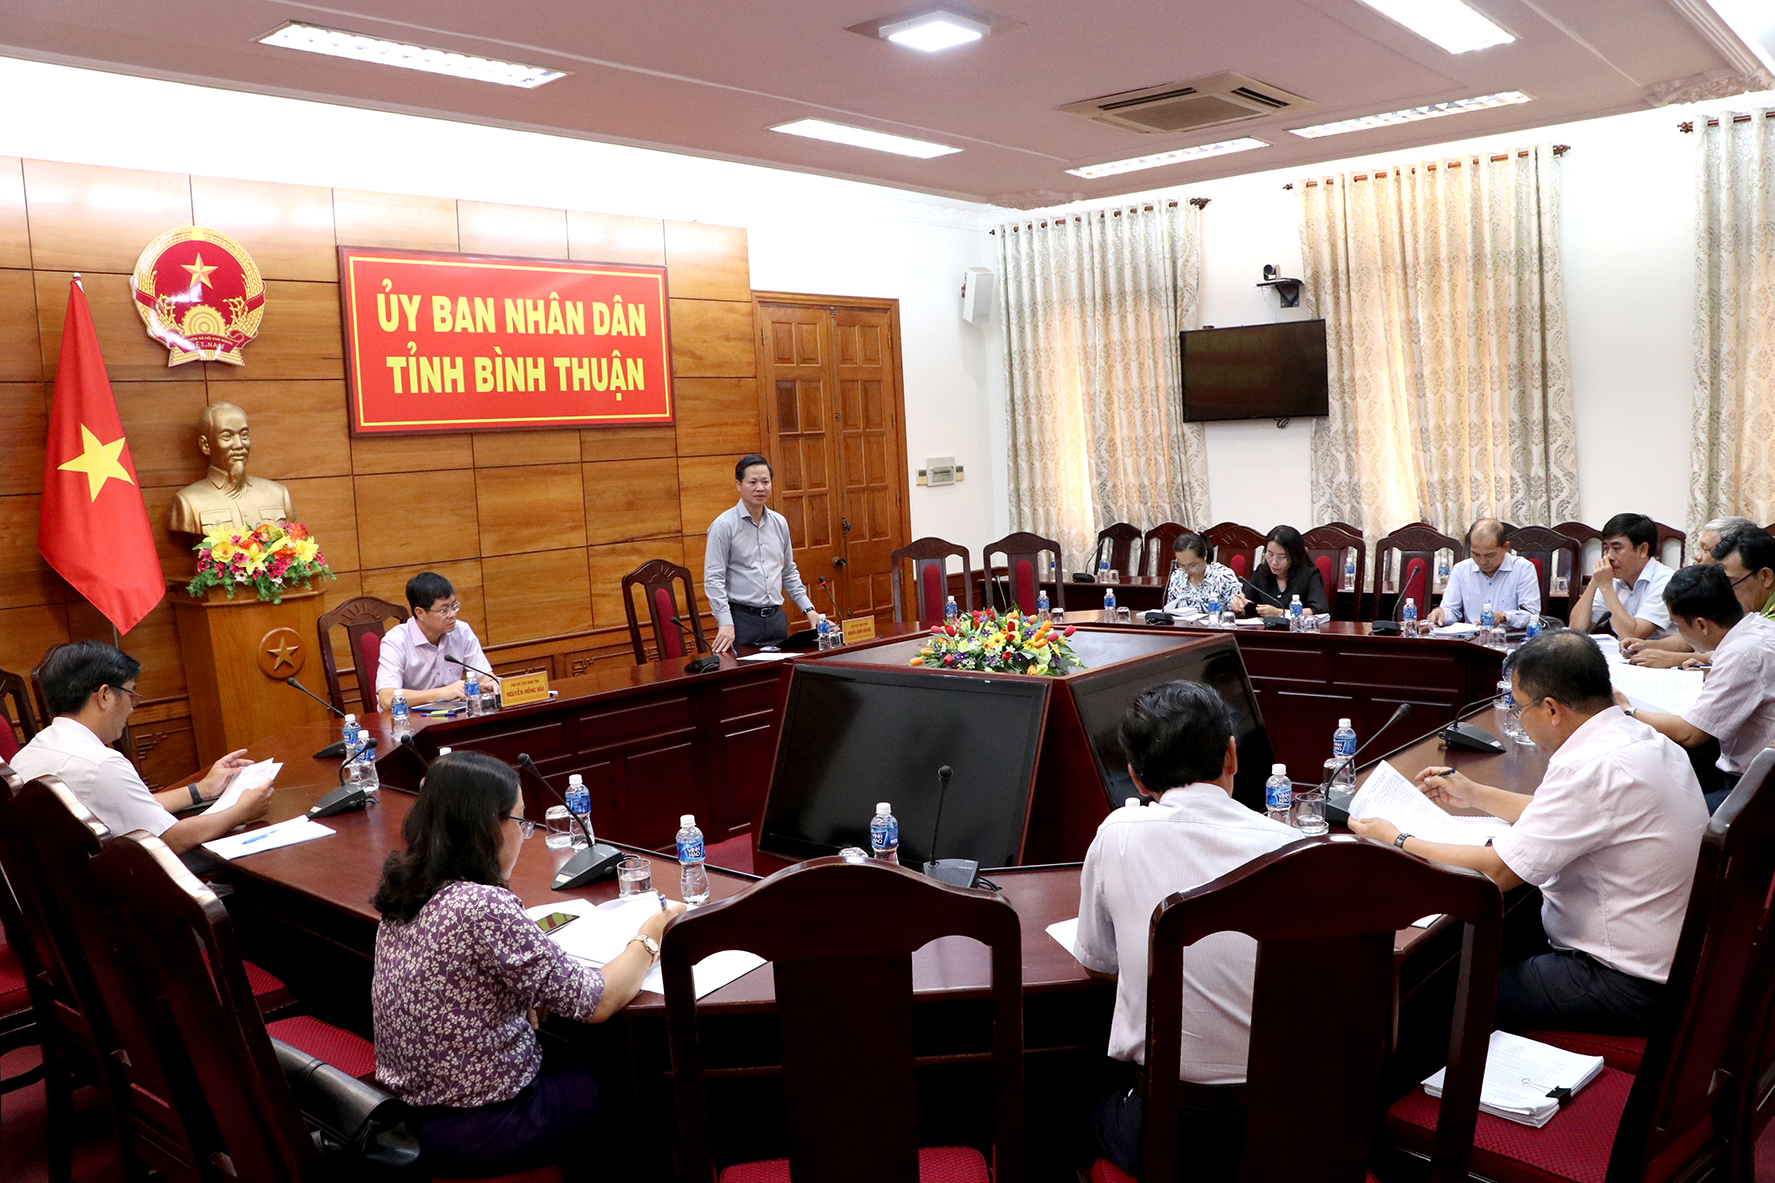 Chỉ đạo mới nhất của Chủ tịch tỉnh Bình Thuận về dự án hồ chứa nước Ka Pét